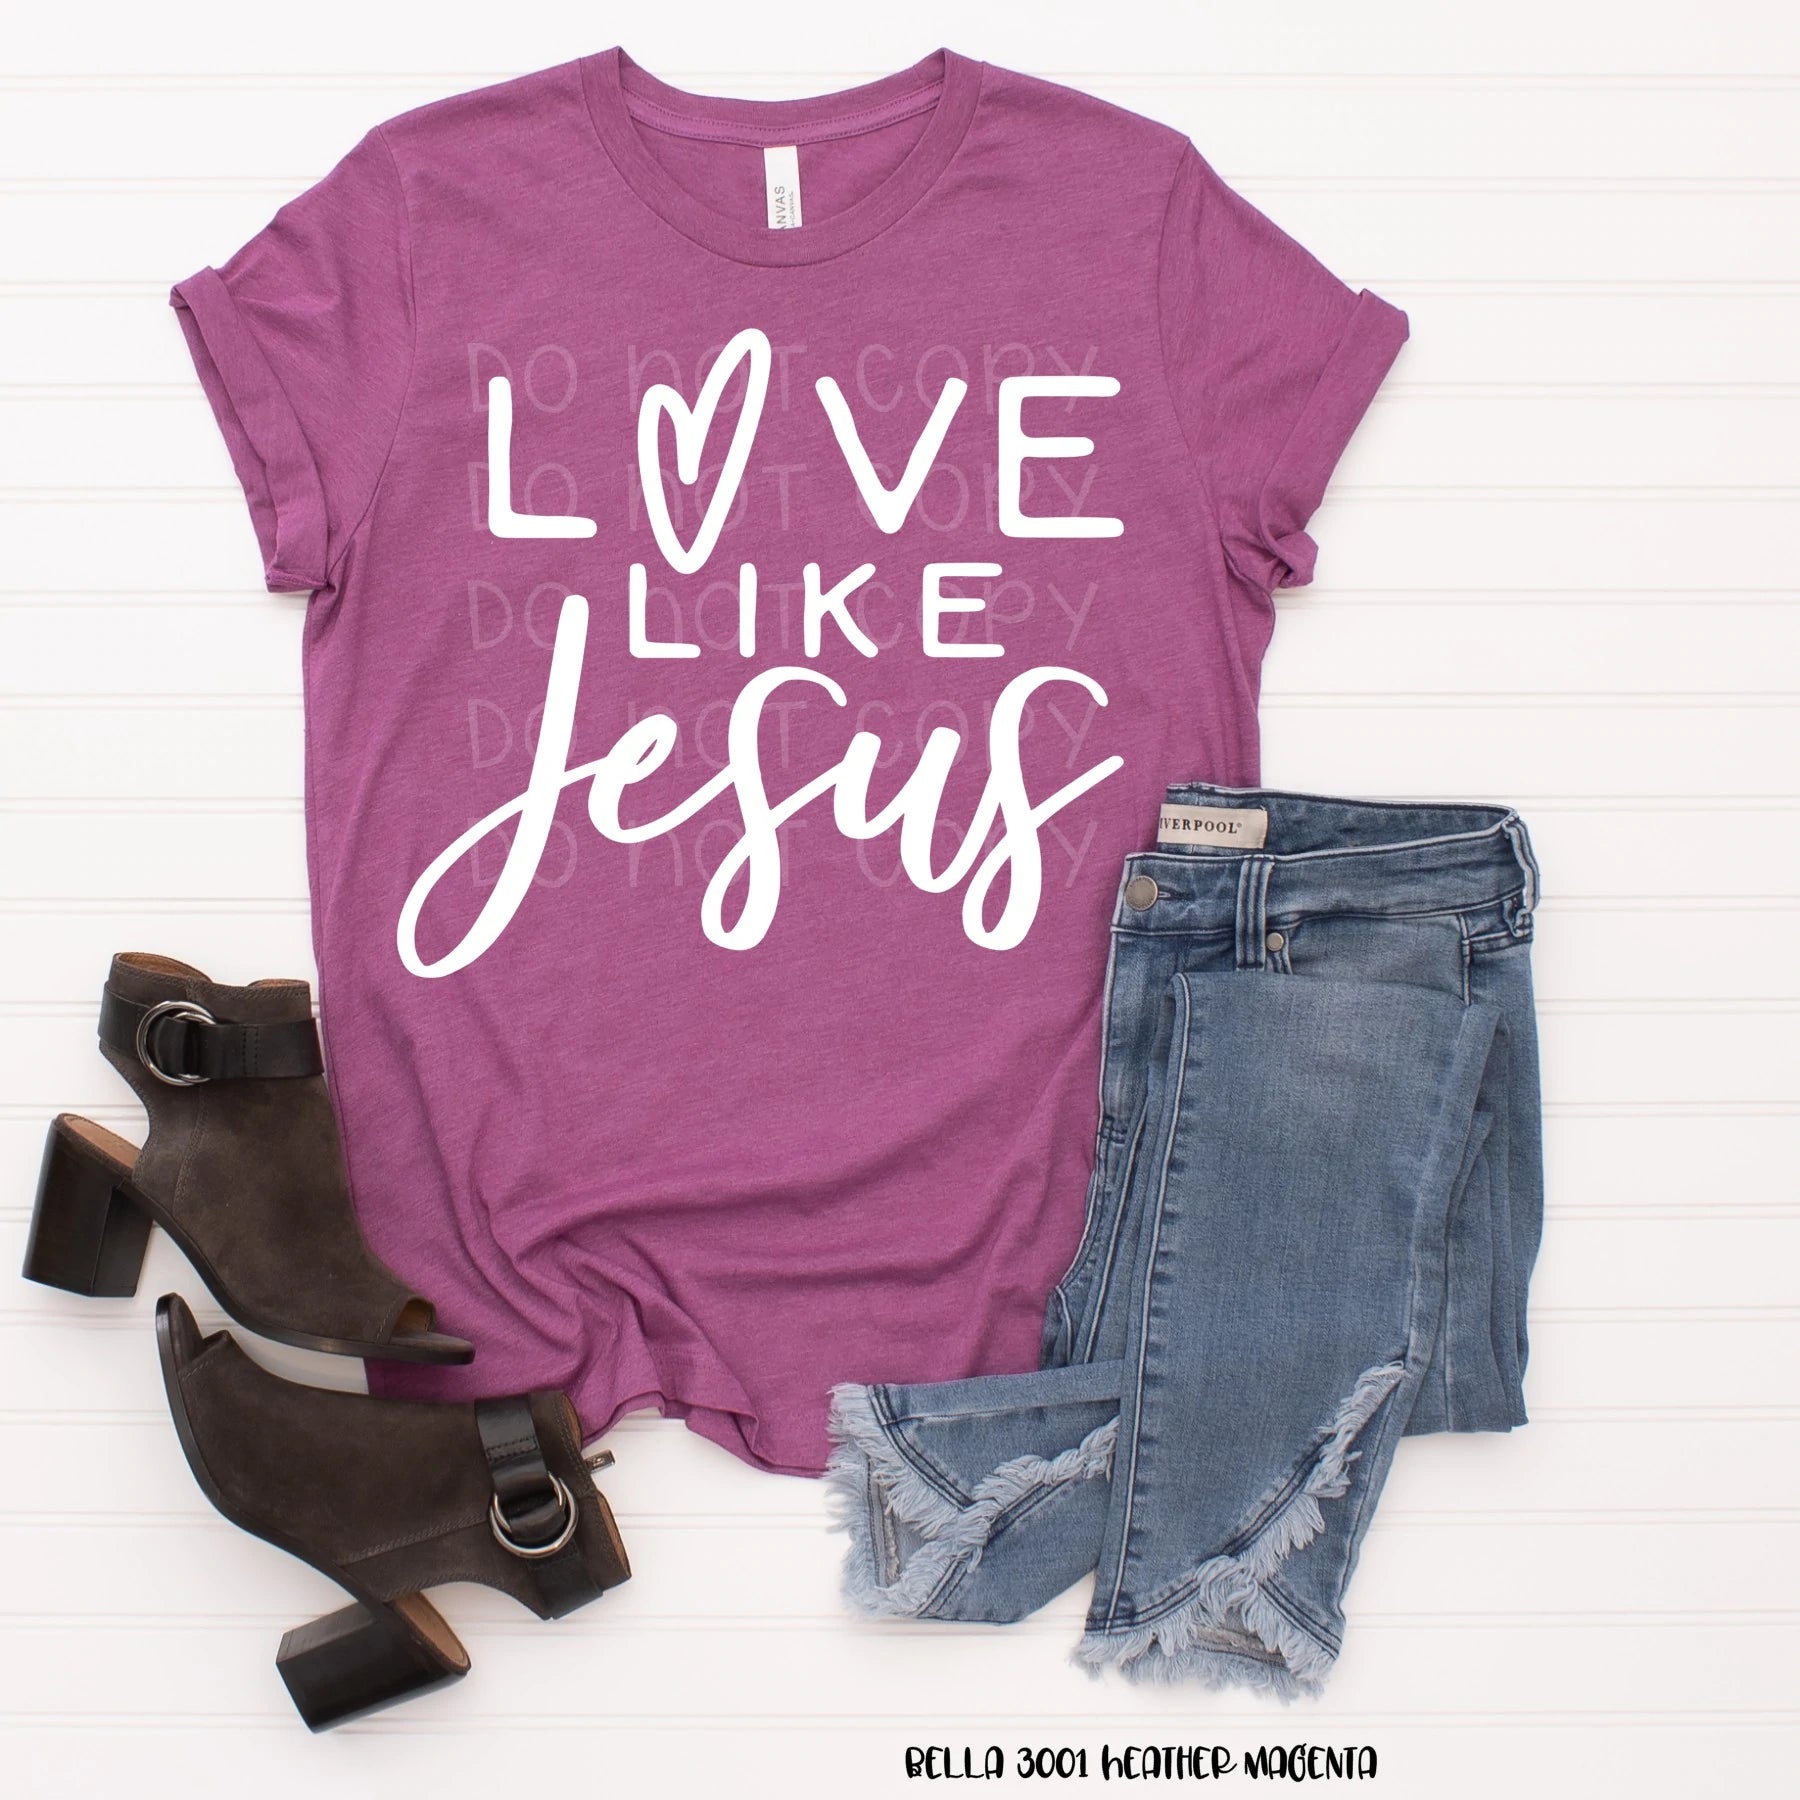 Love like Jesus - T- Shirt